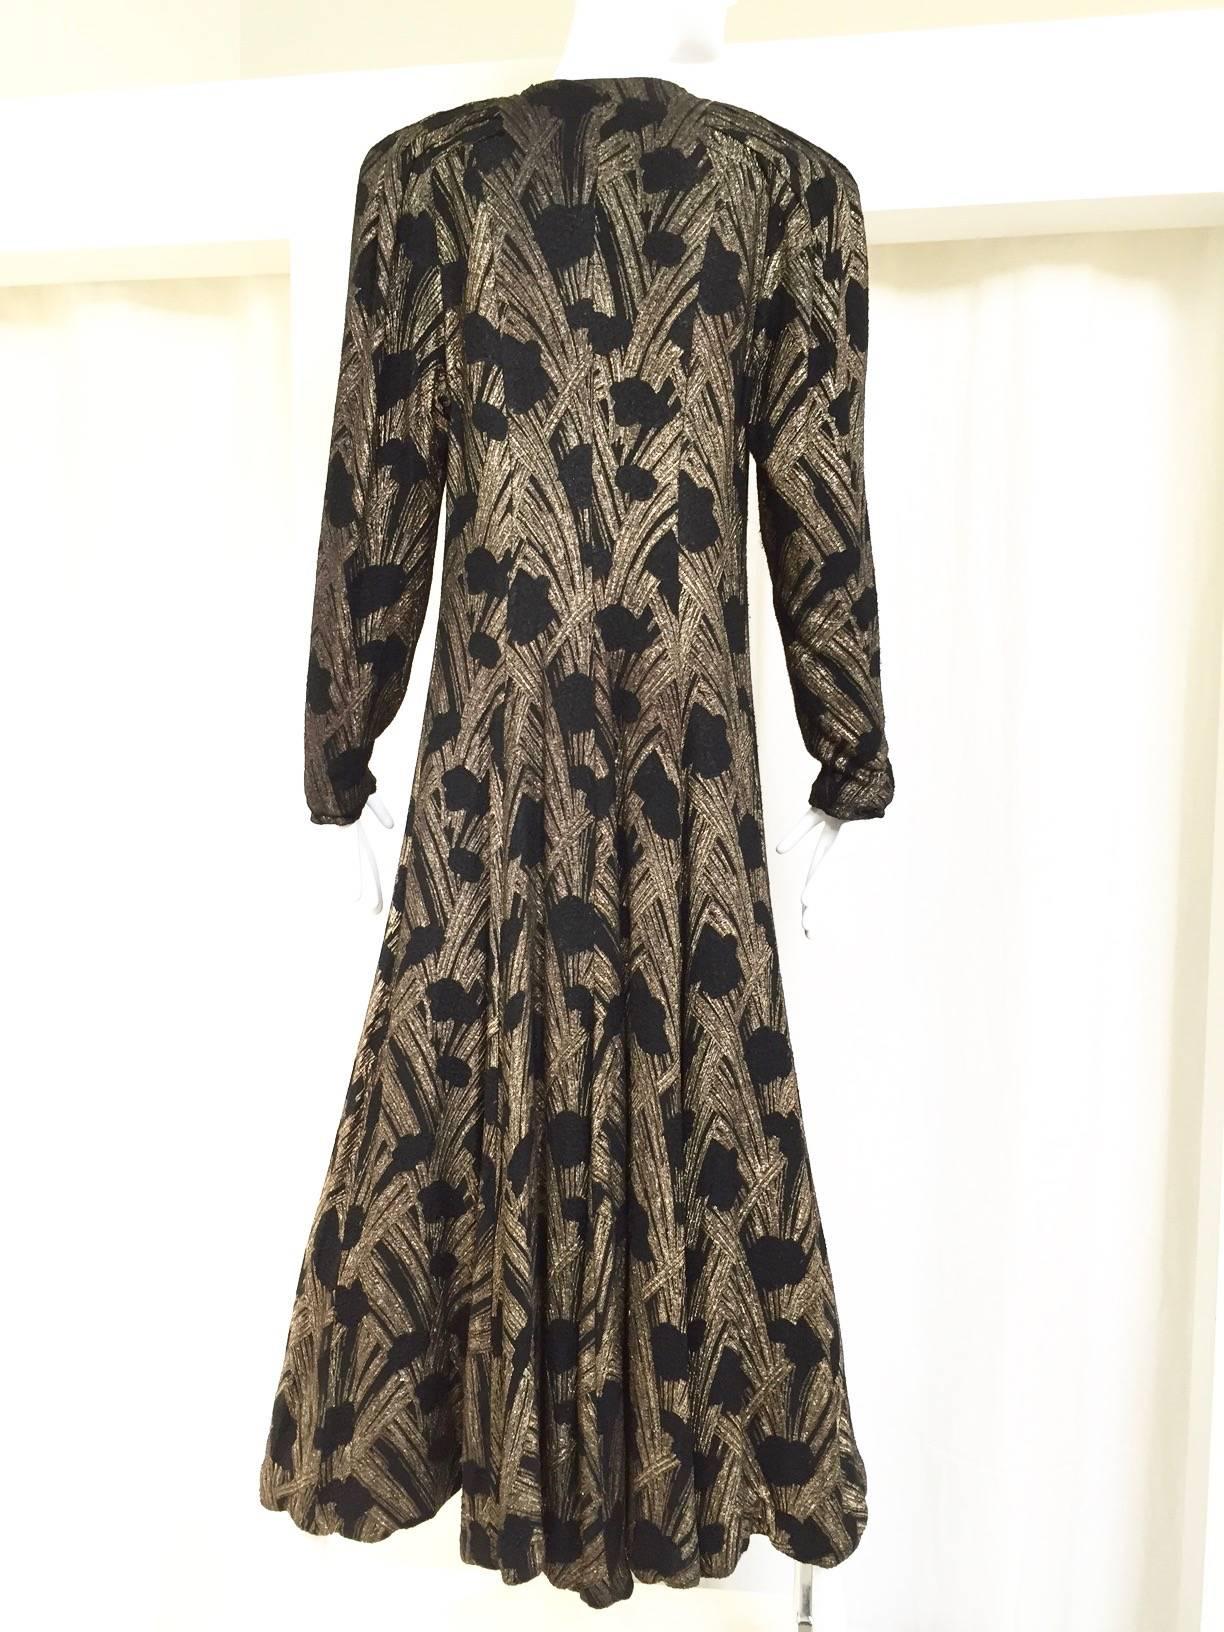 1930s black and gold lamè velvet evening coat. coat lined in silk velvet.
Bust: 36